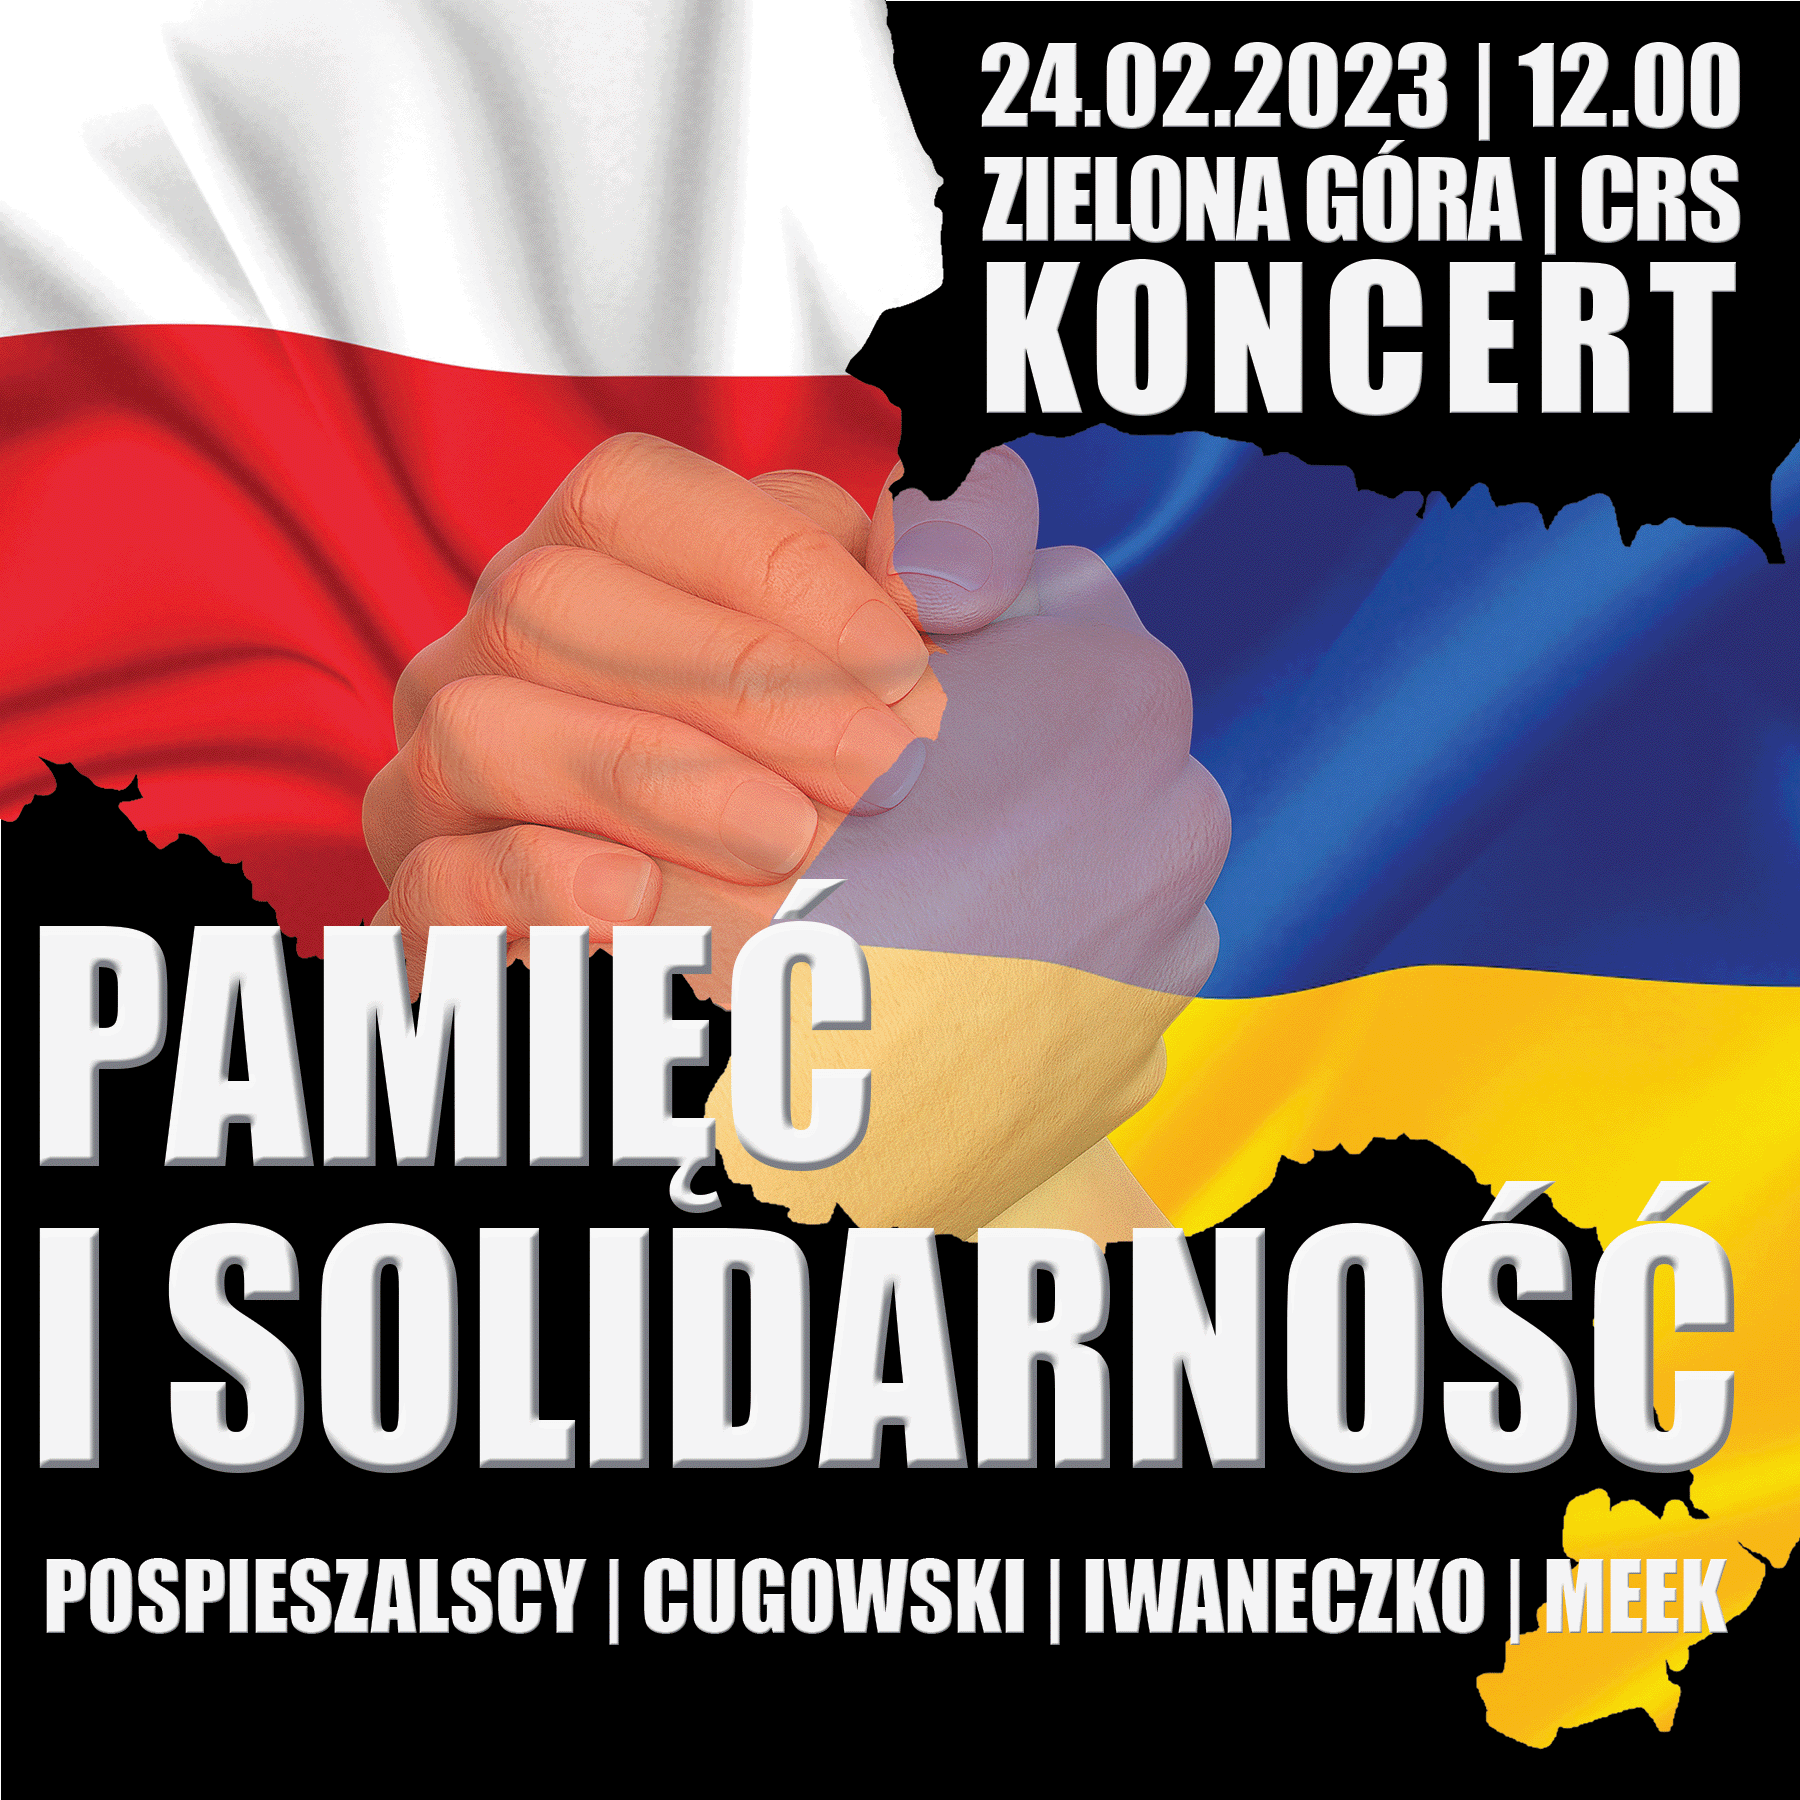 Pamięć i solidarność - plakat koncertu